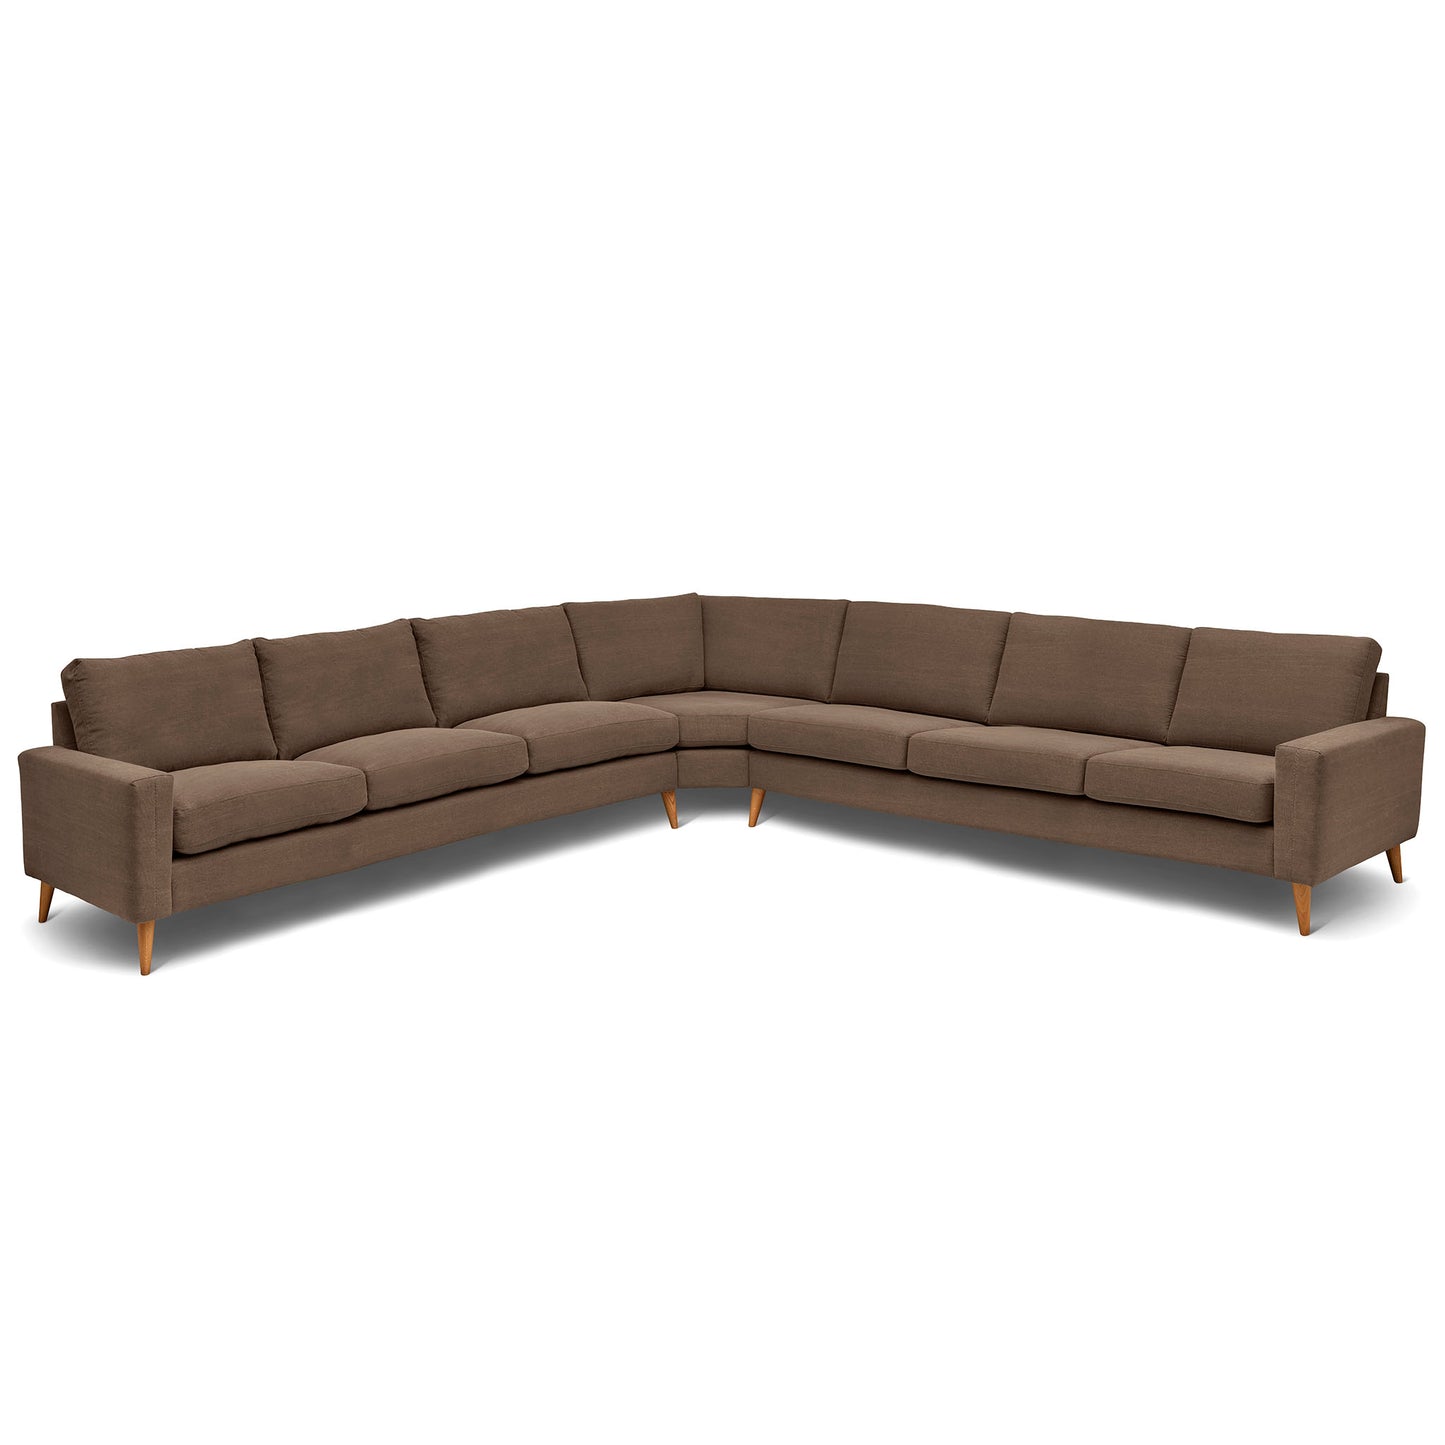 Stor kvadratisk hörnsoffa med måttet 360x360 cm. Sittvänlig soffa för äldre i brunt tyg